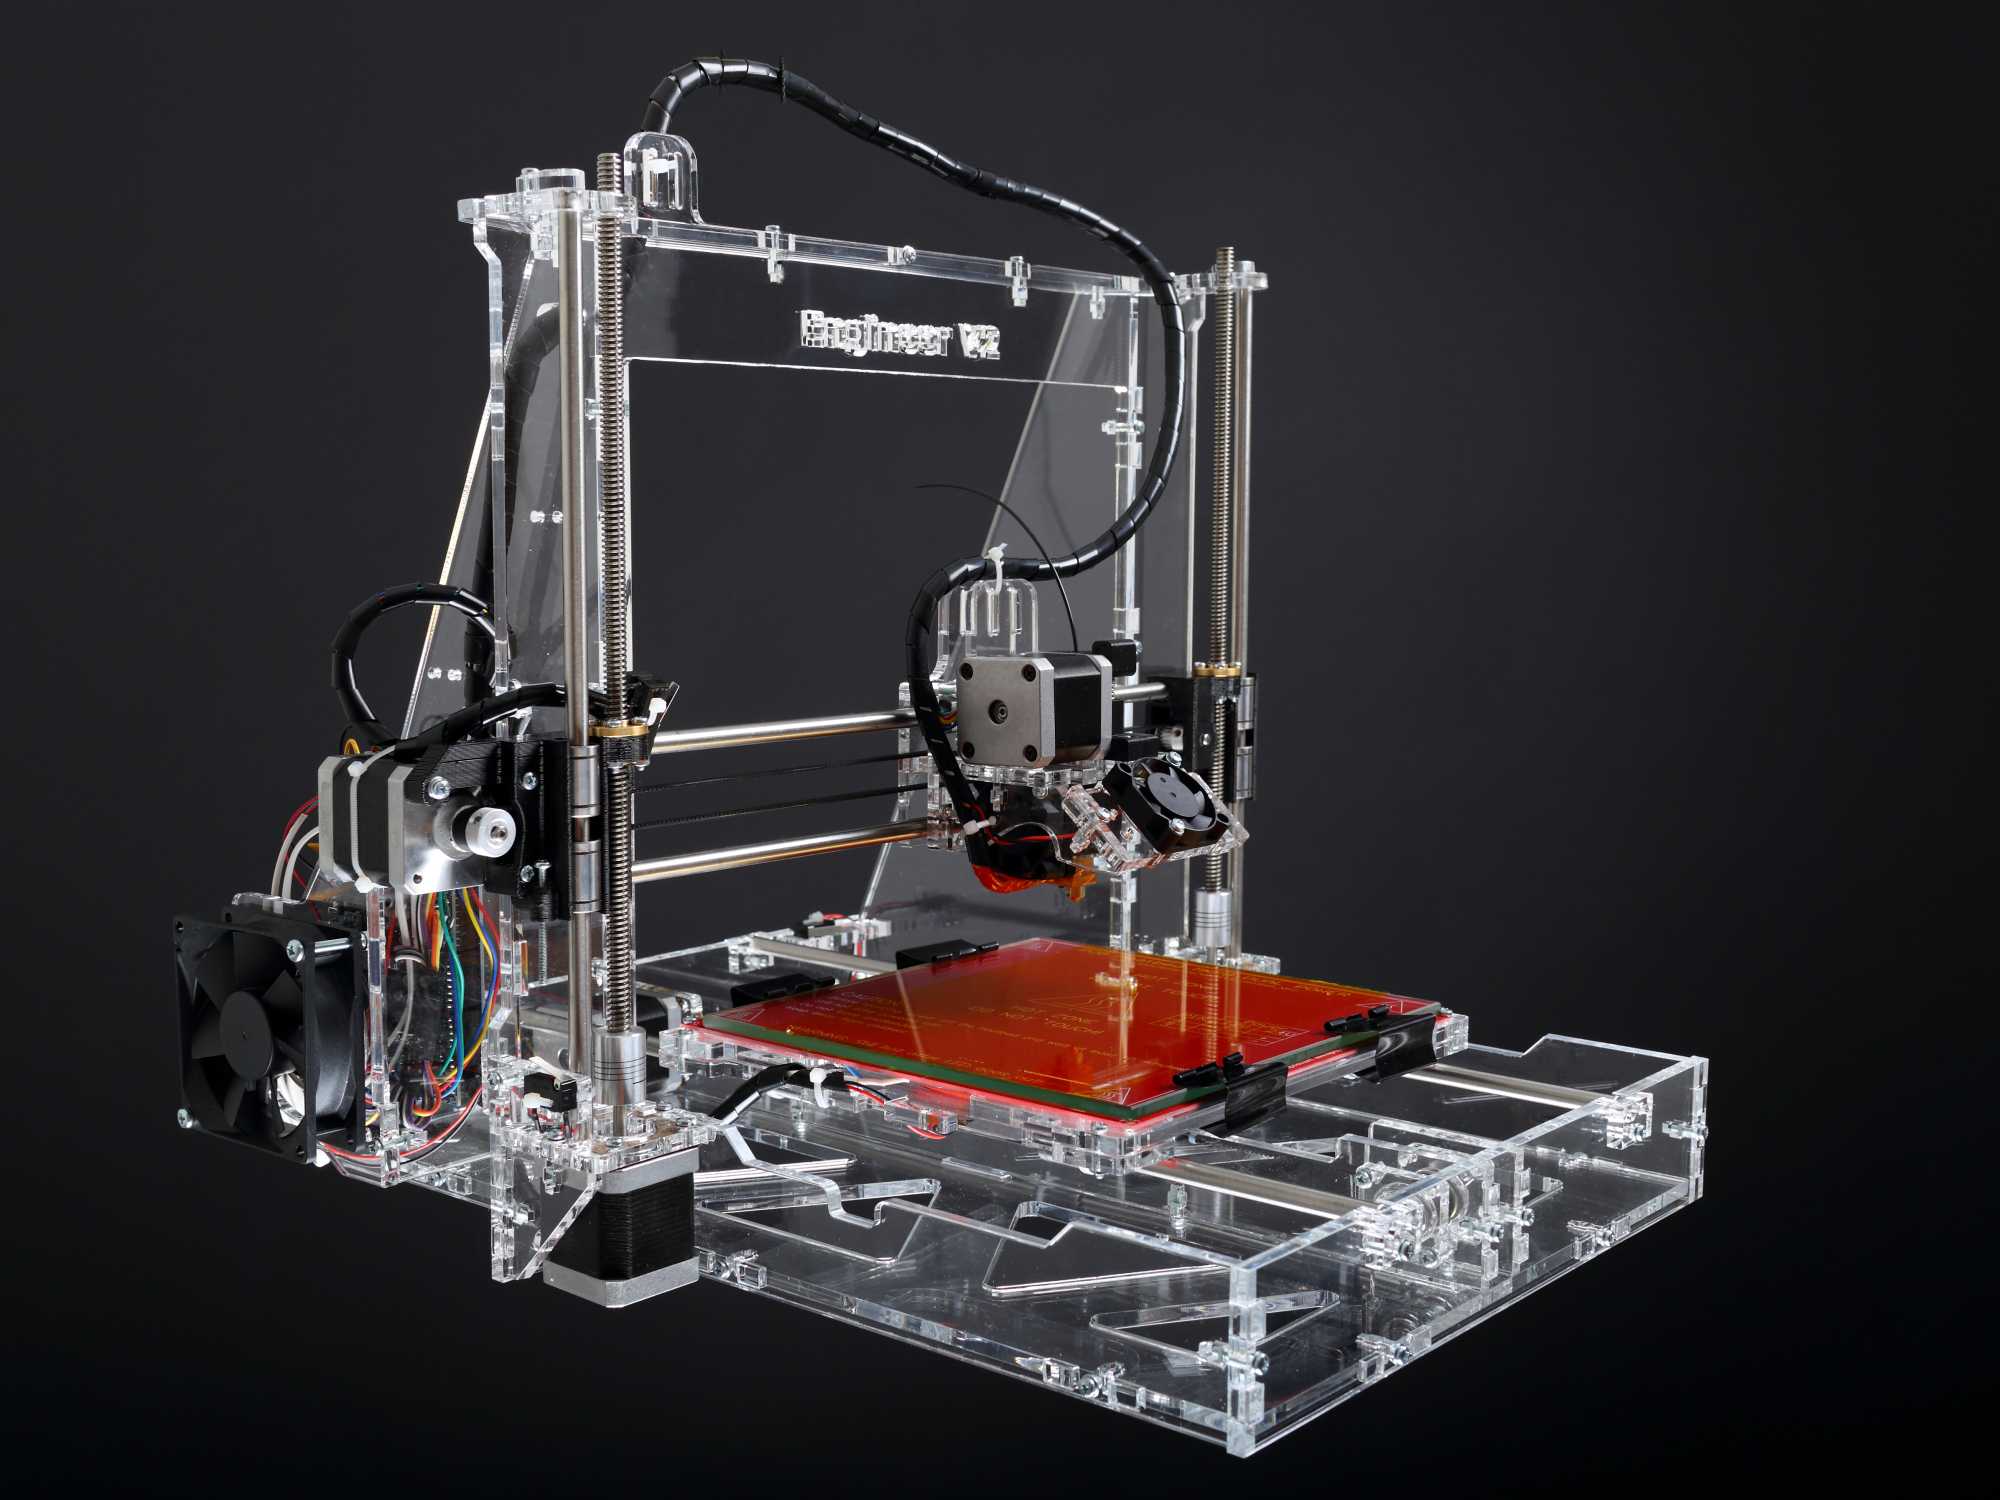 Bdsm 3d printer - 🧡 Зd принтер 1.1 QUBD - Модели для 3D принтера.